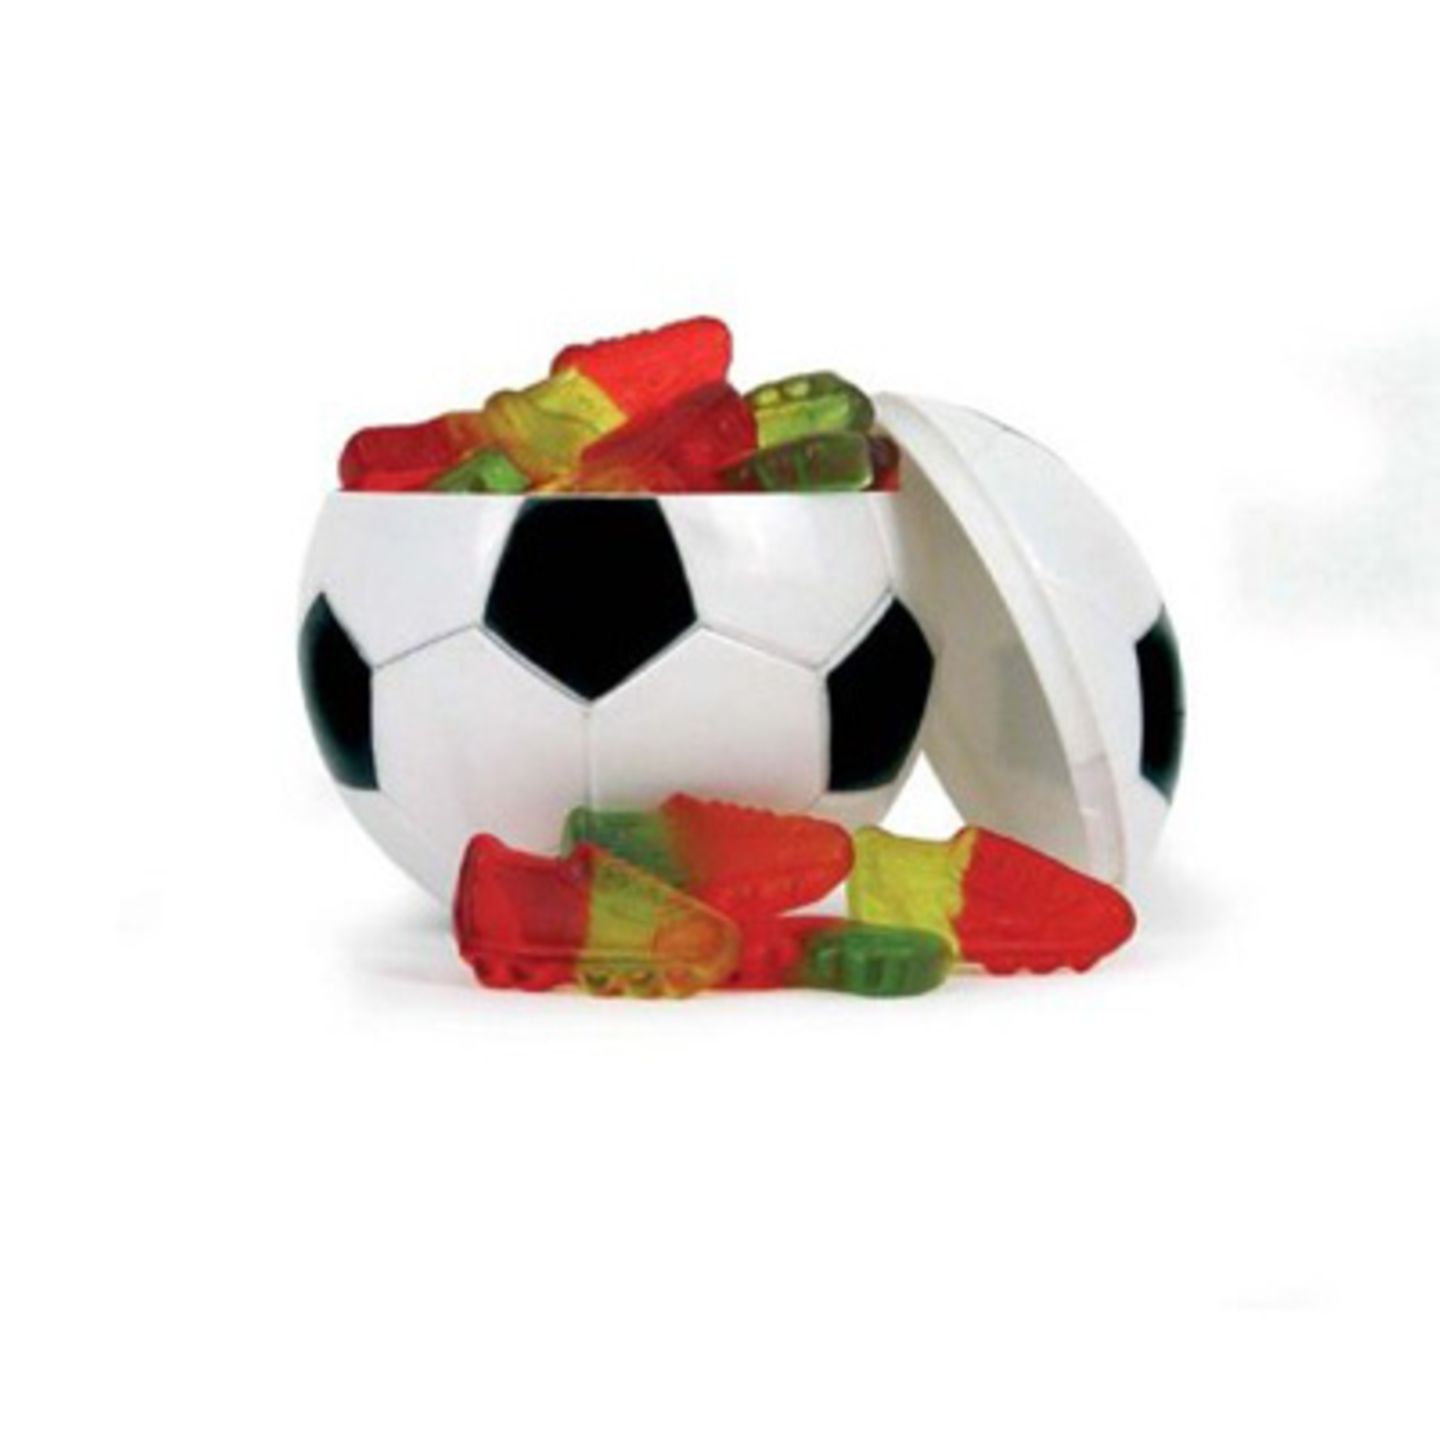 Der perfekte Fußball für Leckermäuler, gefüllt mit süßen Gummischuhen. Wenn die leer sind, eignet sich die Box immer noch hervorragend als Tippkasse. Ca. 4 Euro über >>www.amazon.de